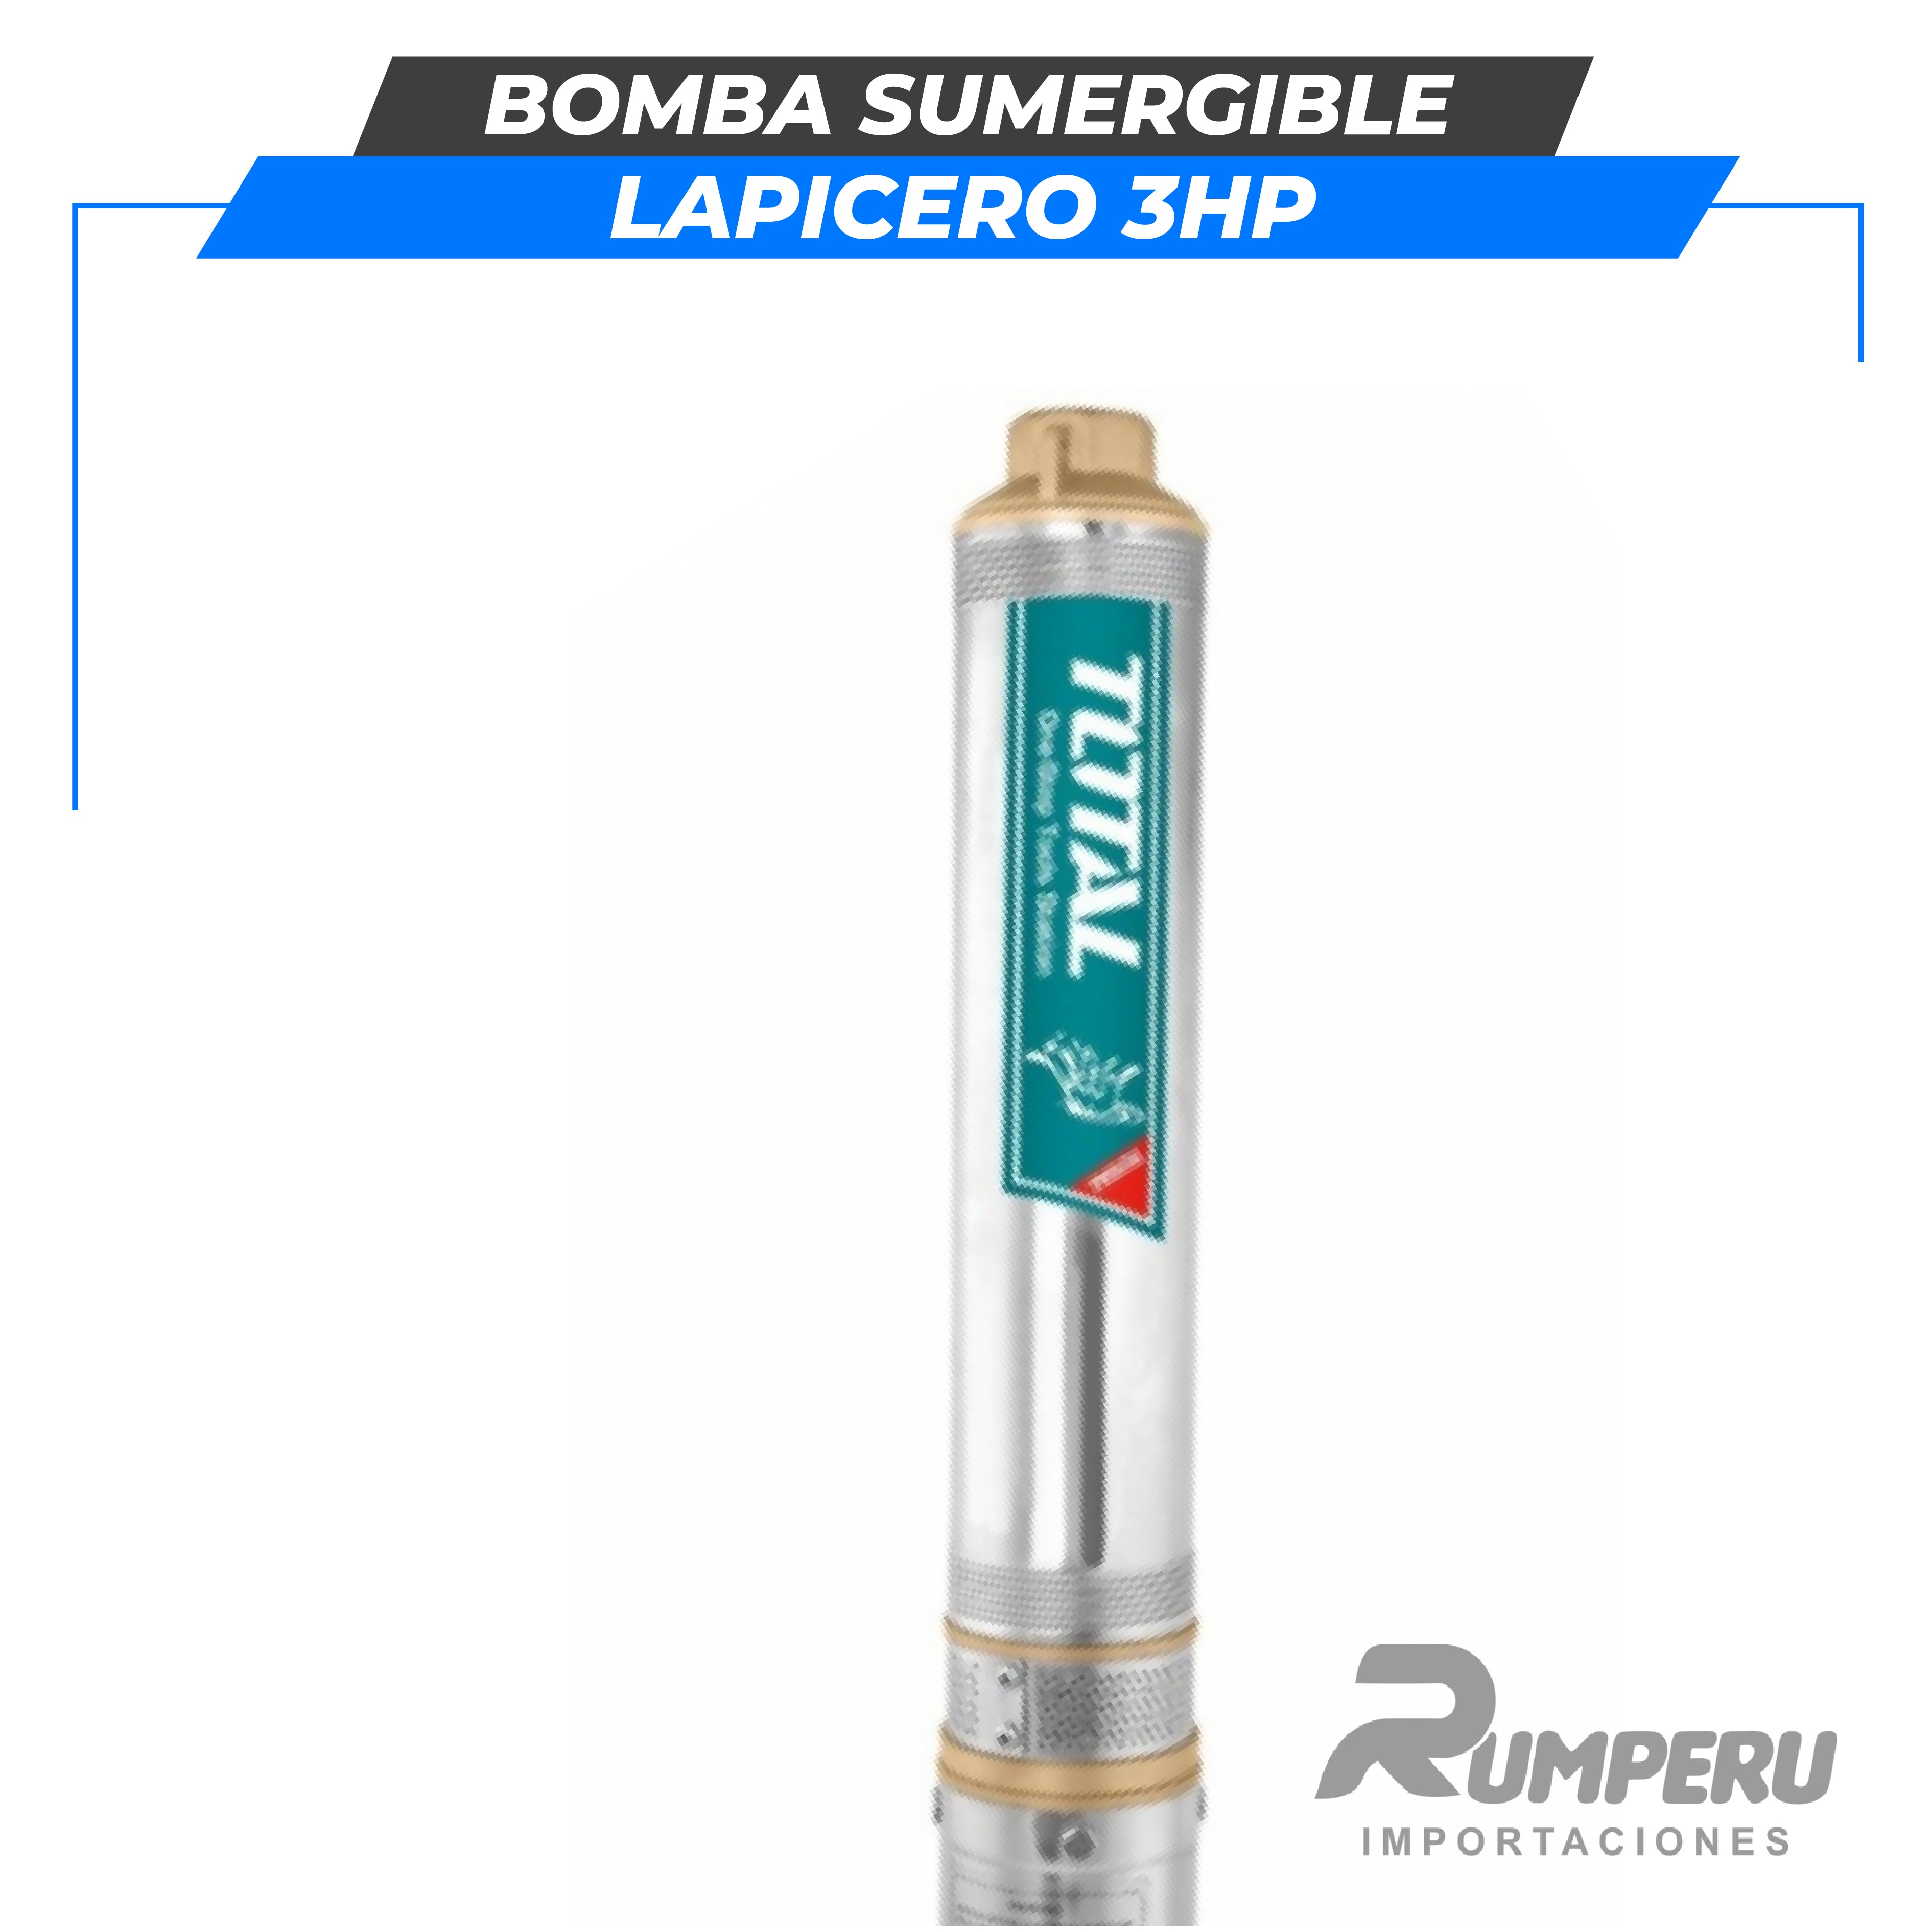 Bomba sumergible lapicero 3HP